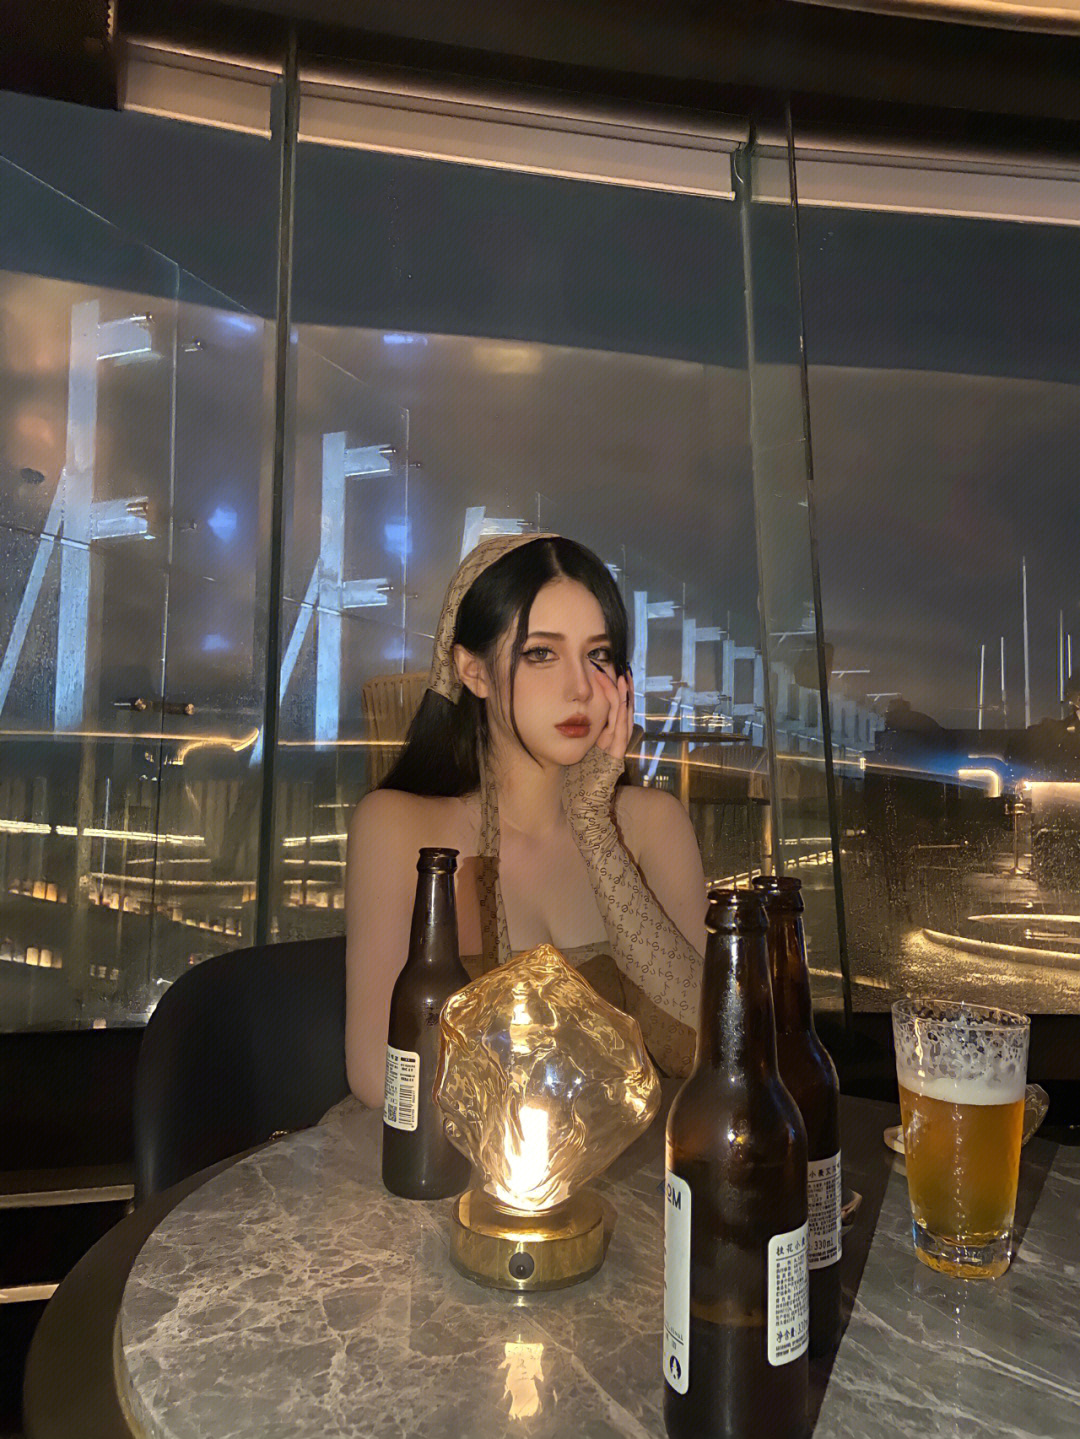 杭州万塘路曼哈顿酒吧图片